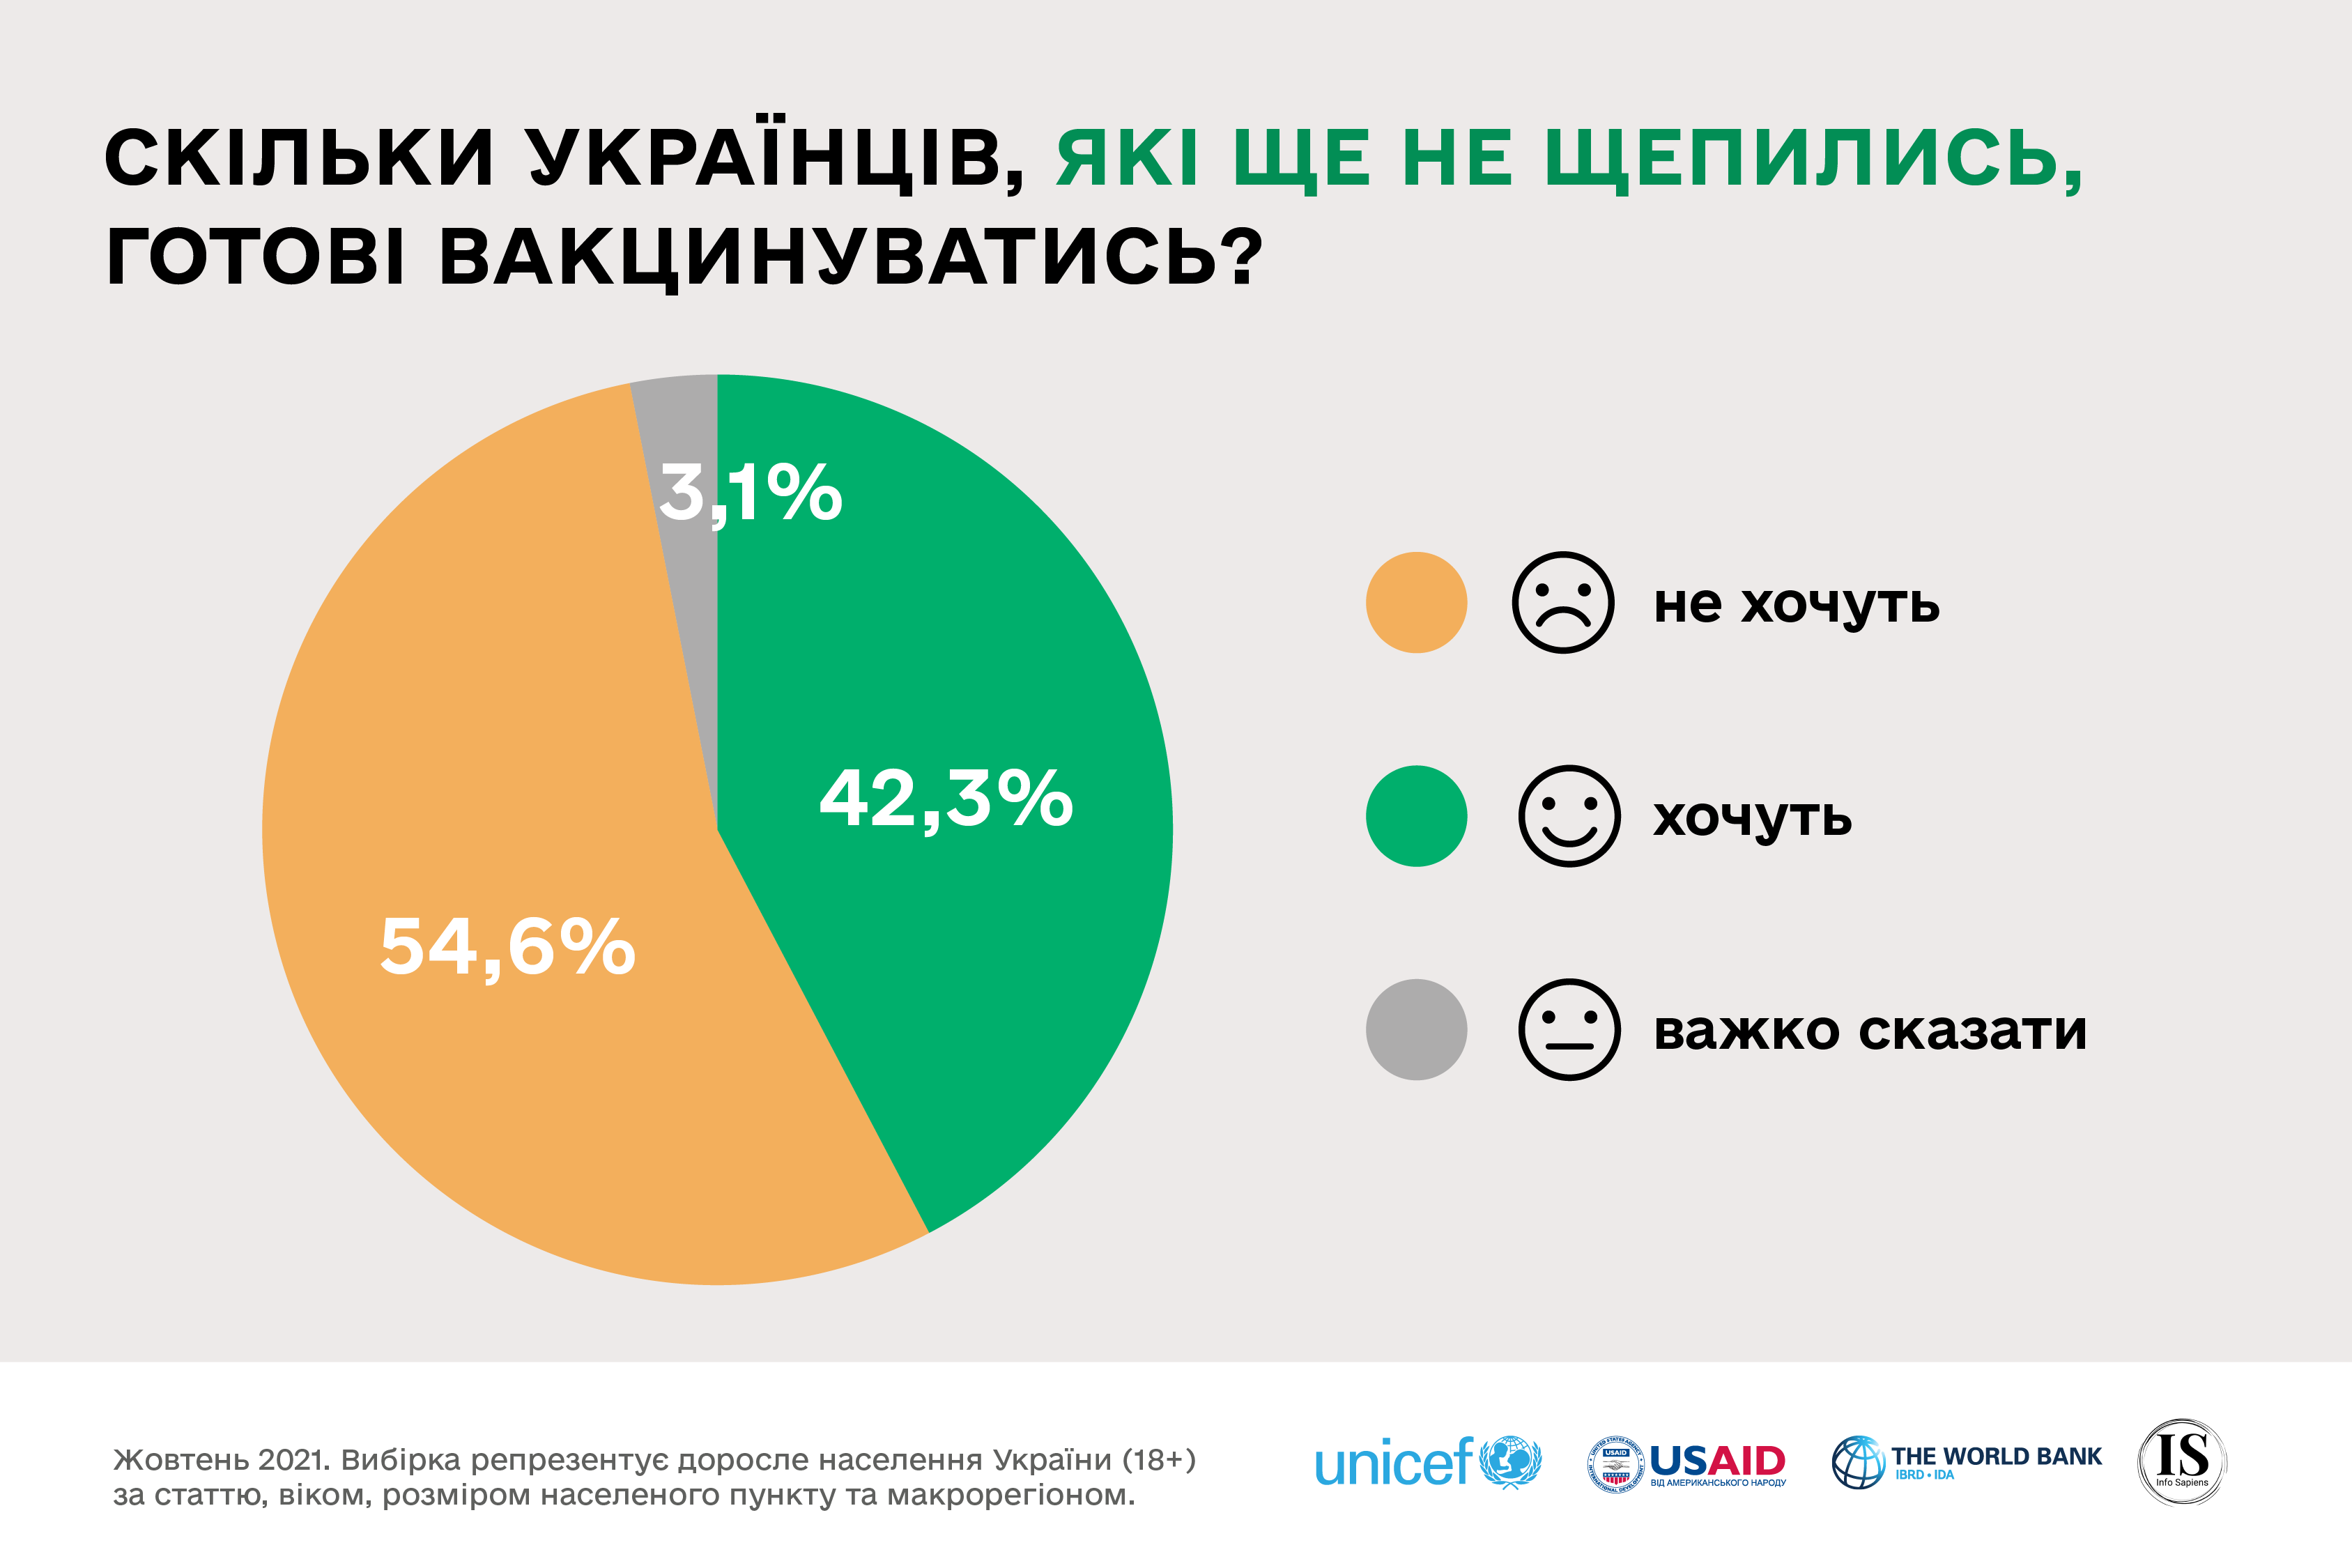 Вакцинація в Україні - 42% українців готові щепитися проти коронавірусу